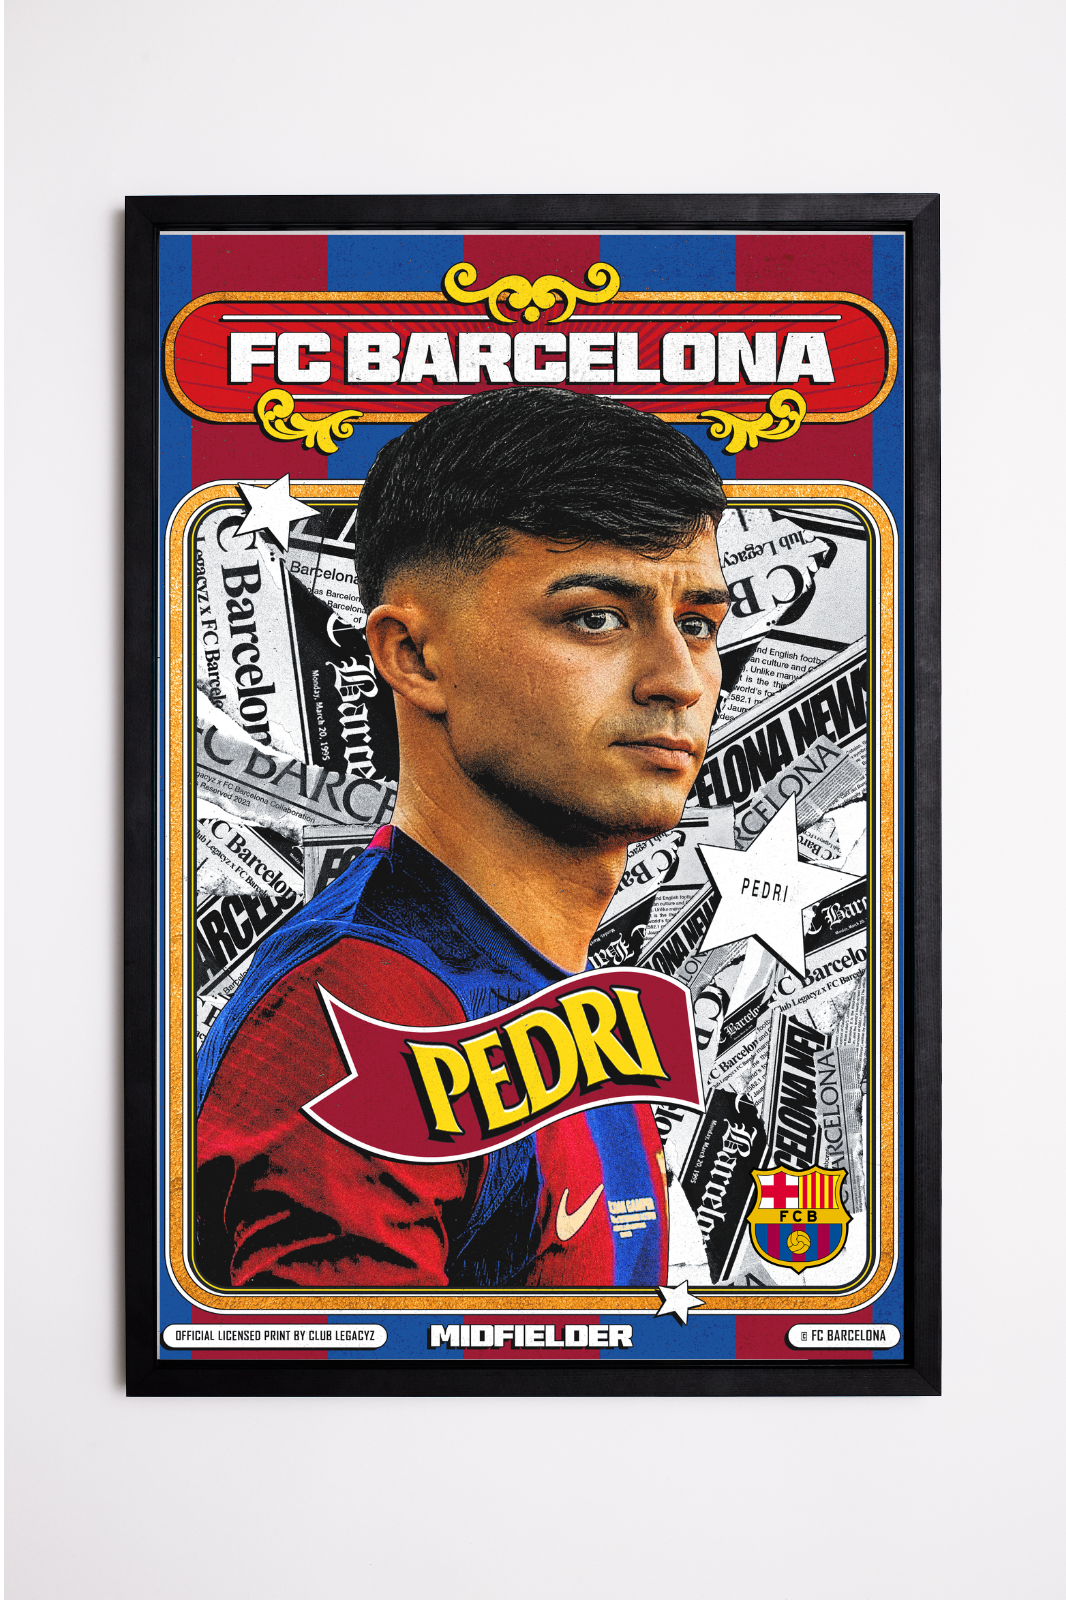 FC Barcelona - Pedri Retro Poster limited to 100